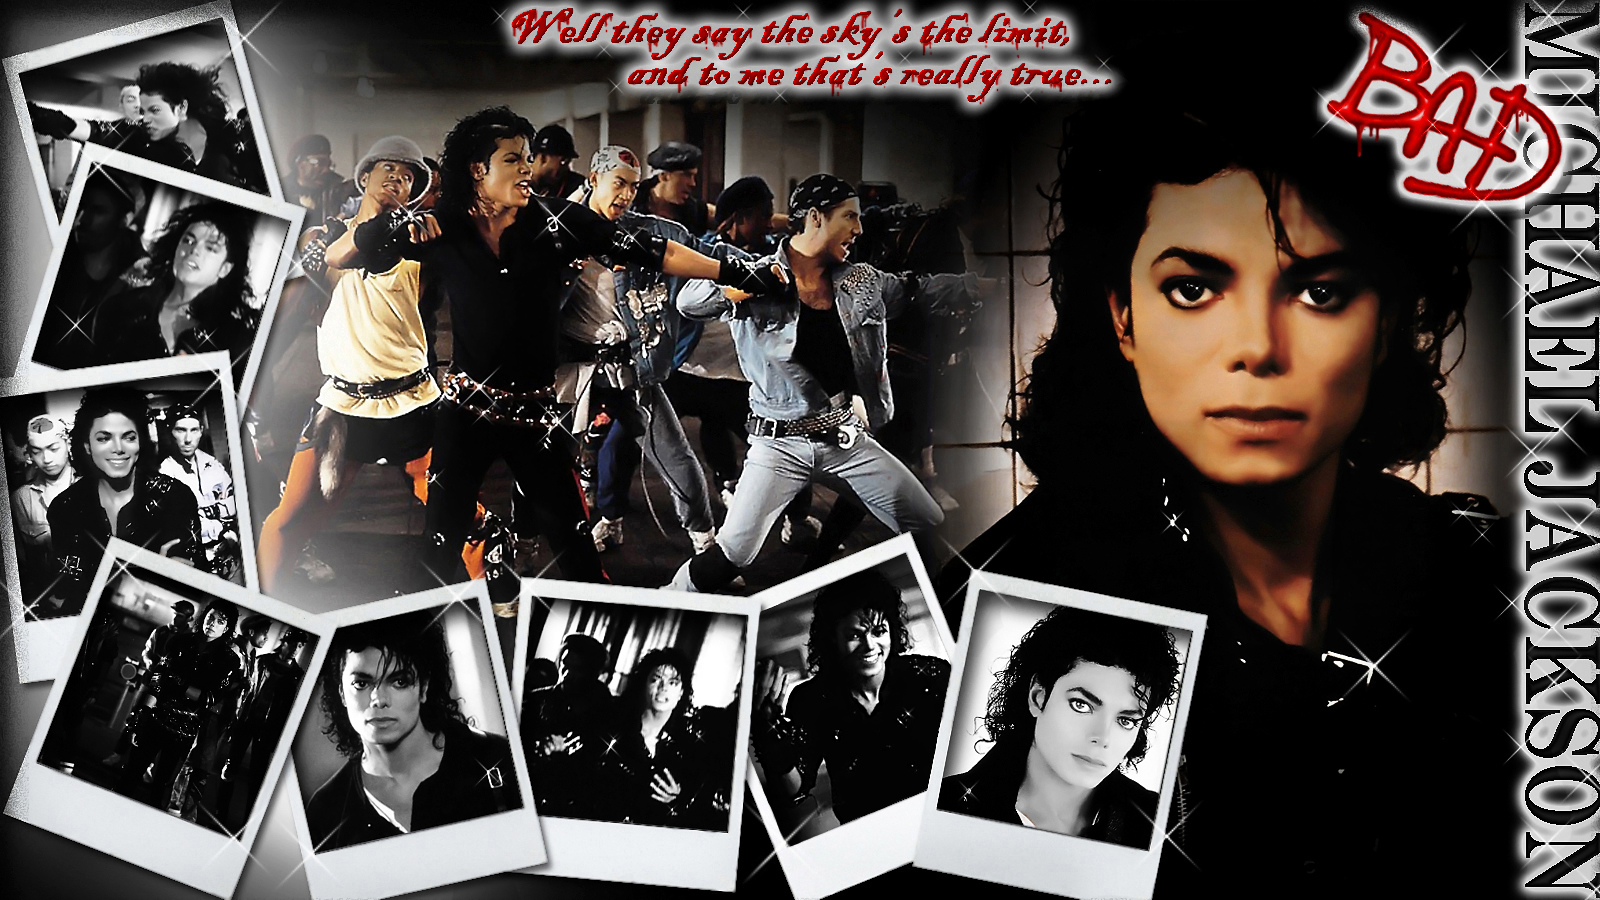 49+] Wallpaper Michael Jackson Bad - WallpaperSafari